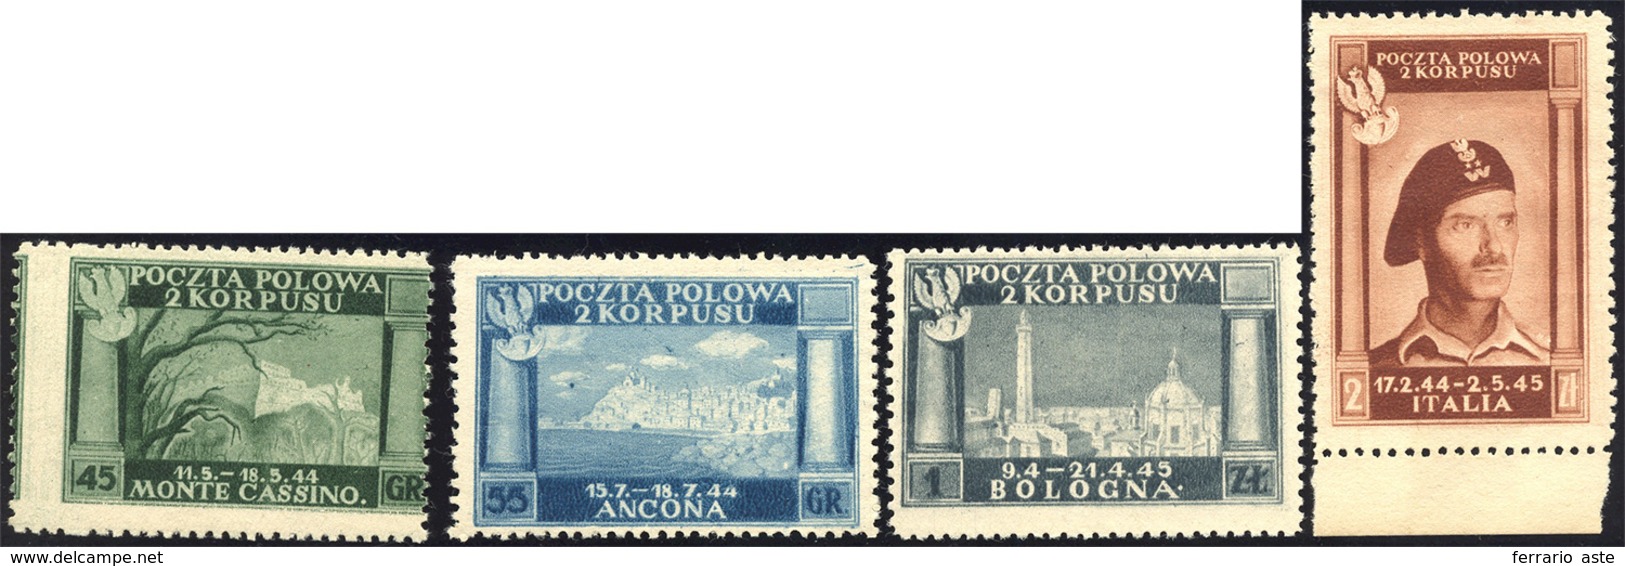 1538 1946 - Vittorie Polacche, Carta Bianca (5/8), Senza Gomma Come Sempre, Perfetti.... - 1946-47 Corpo Polacco Period